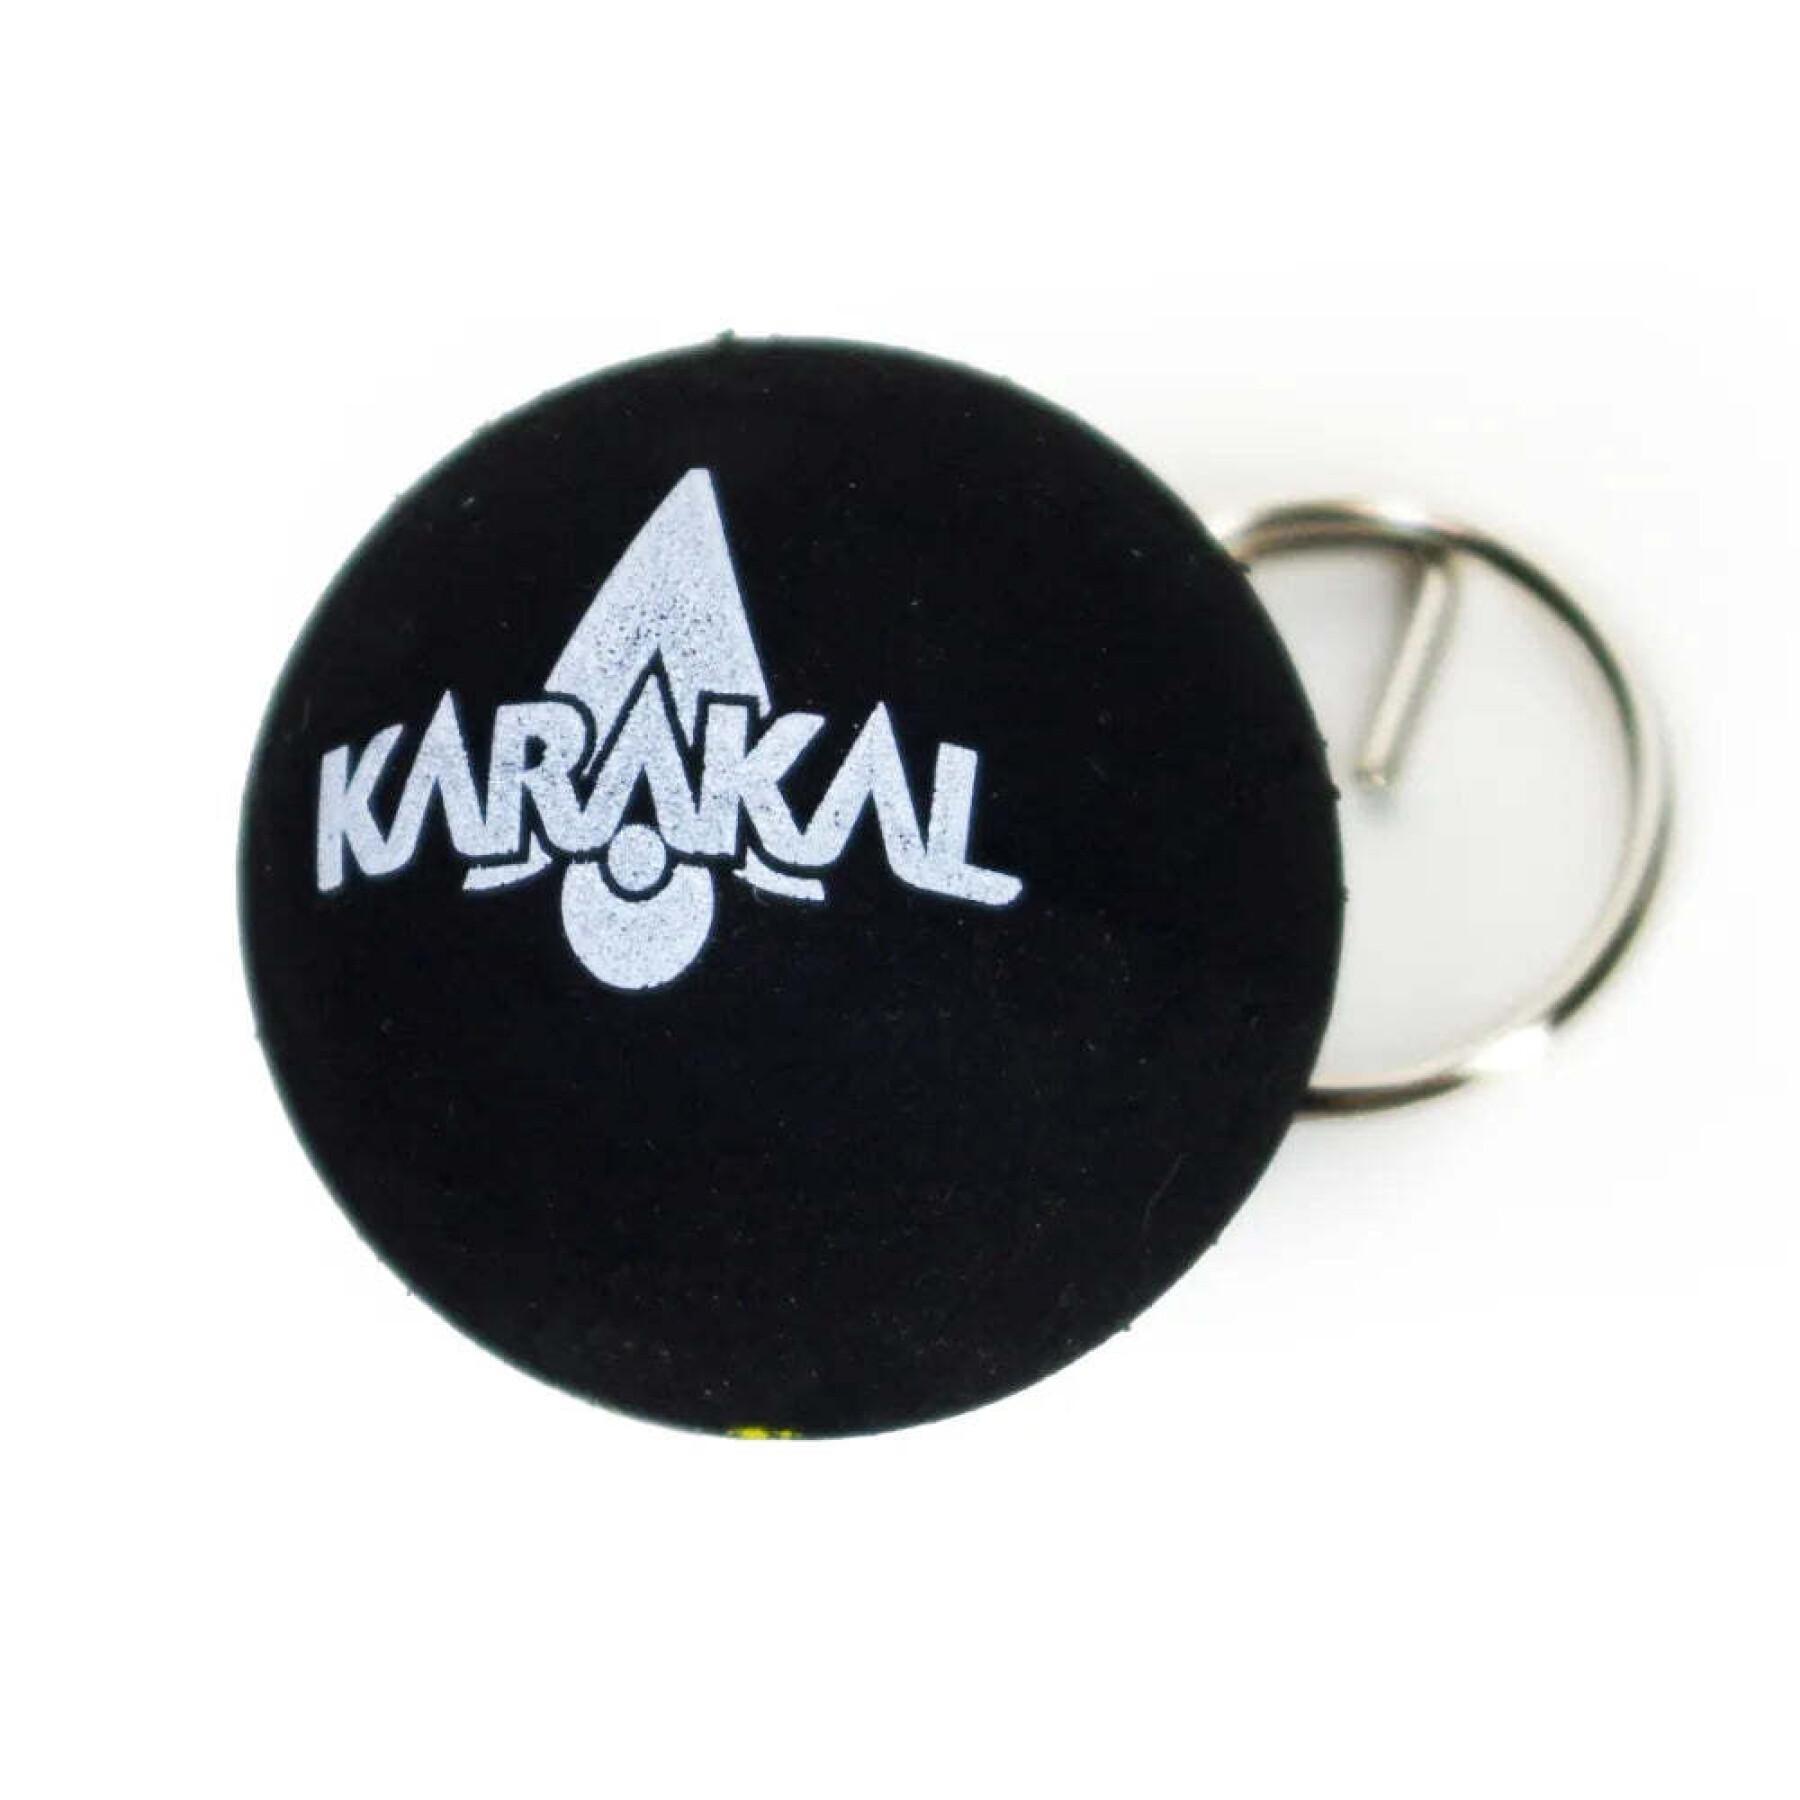 Squash ball keychain Karakal